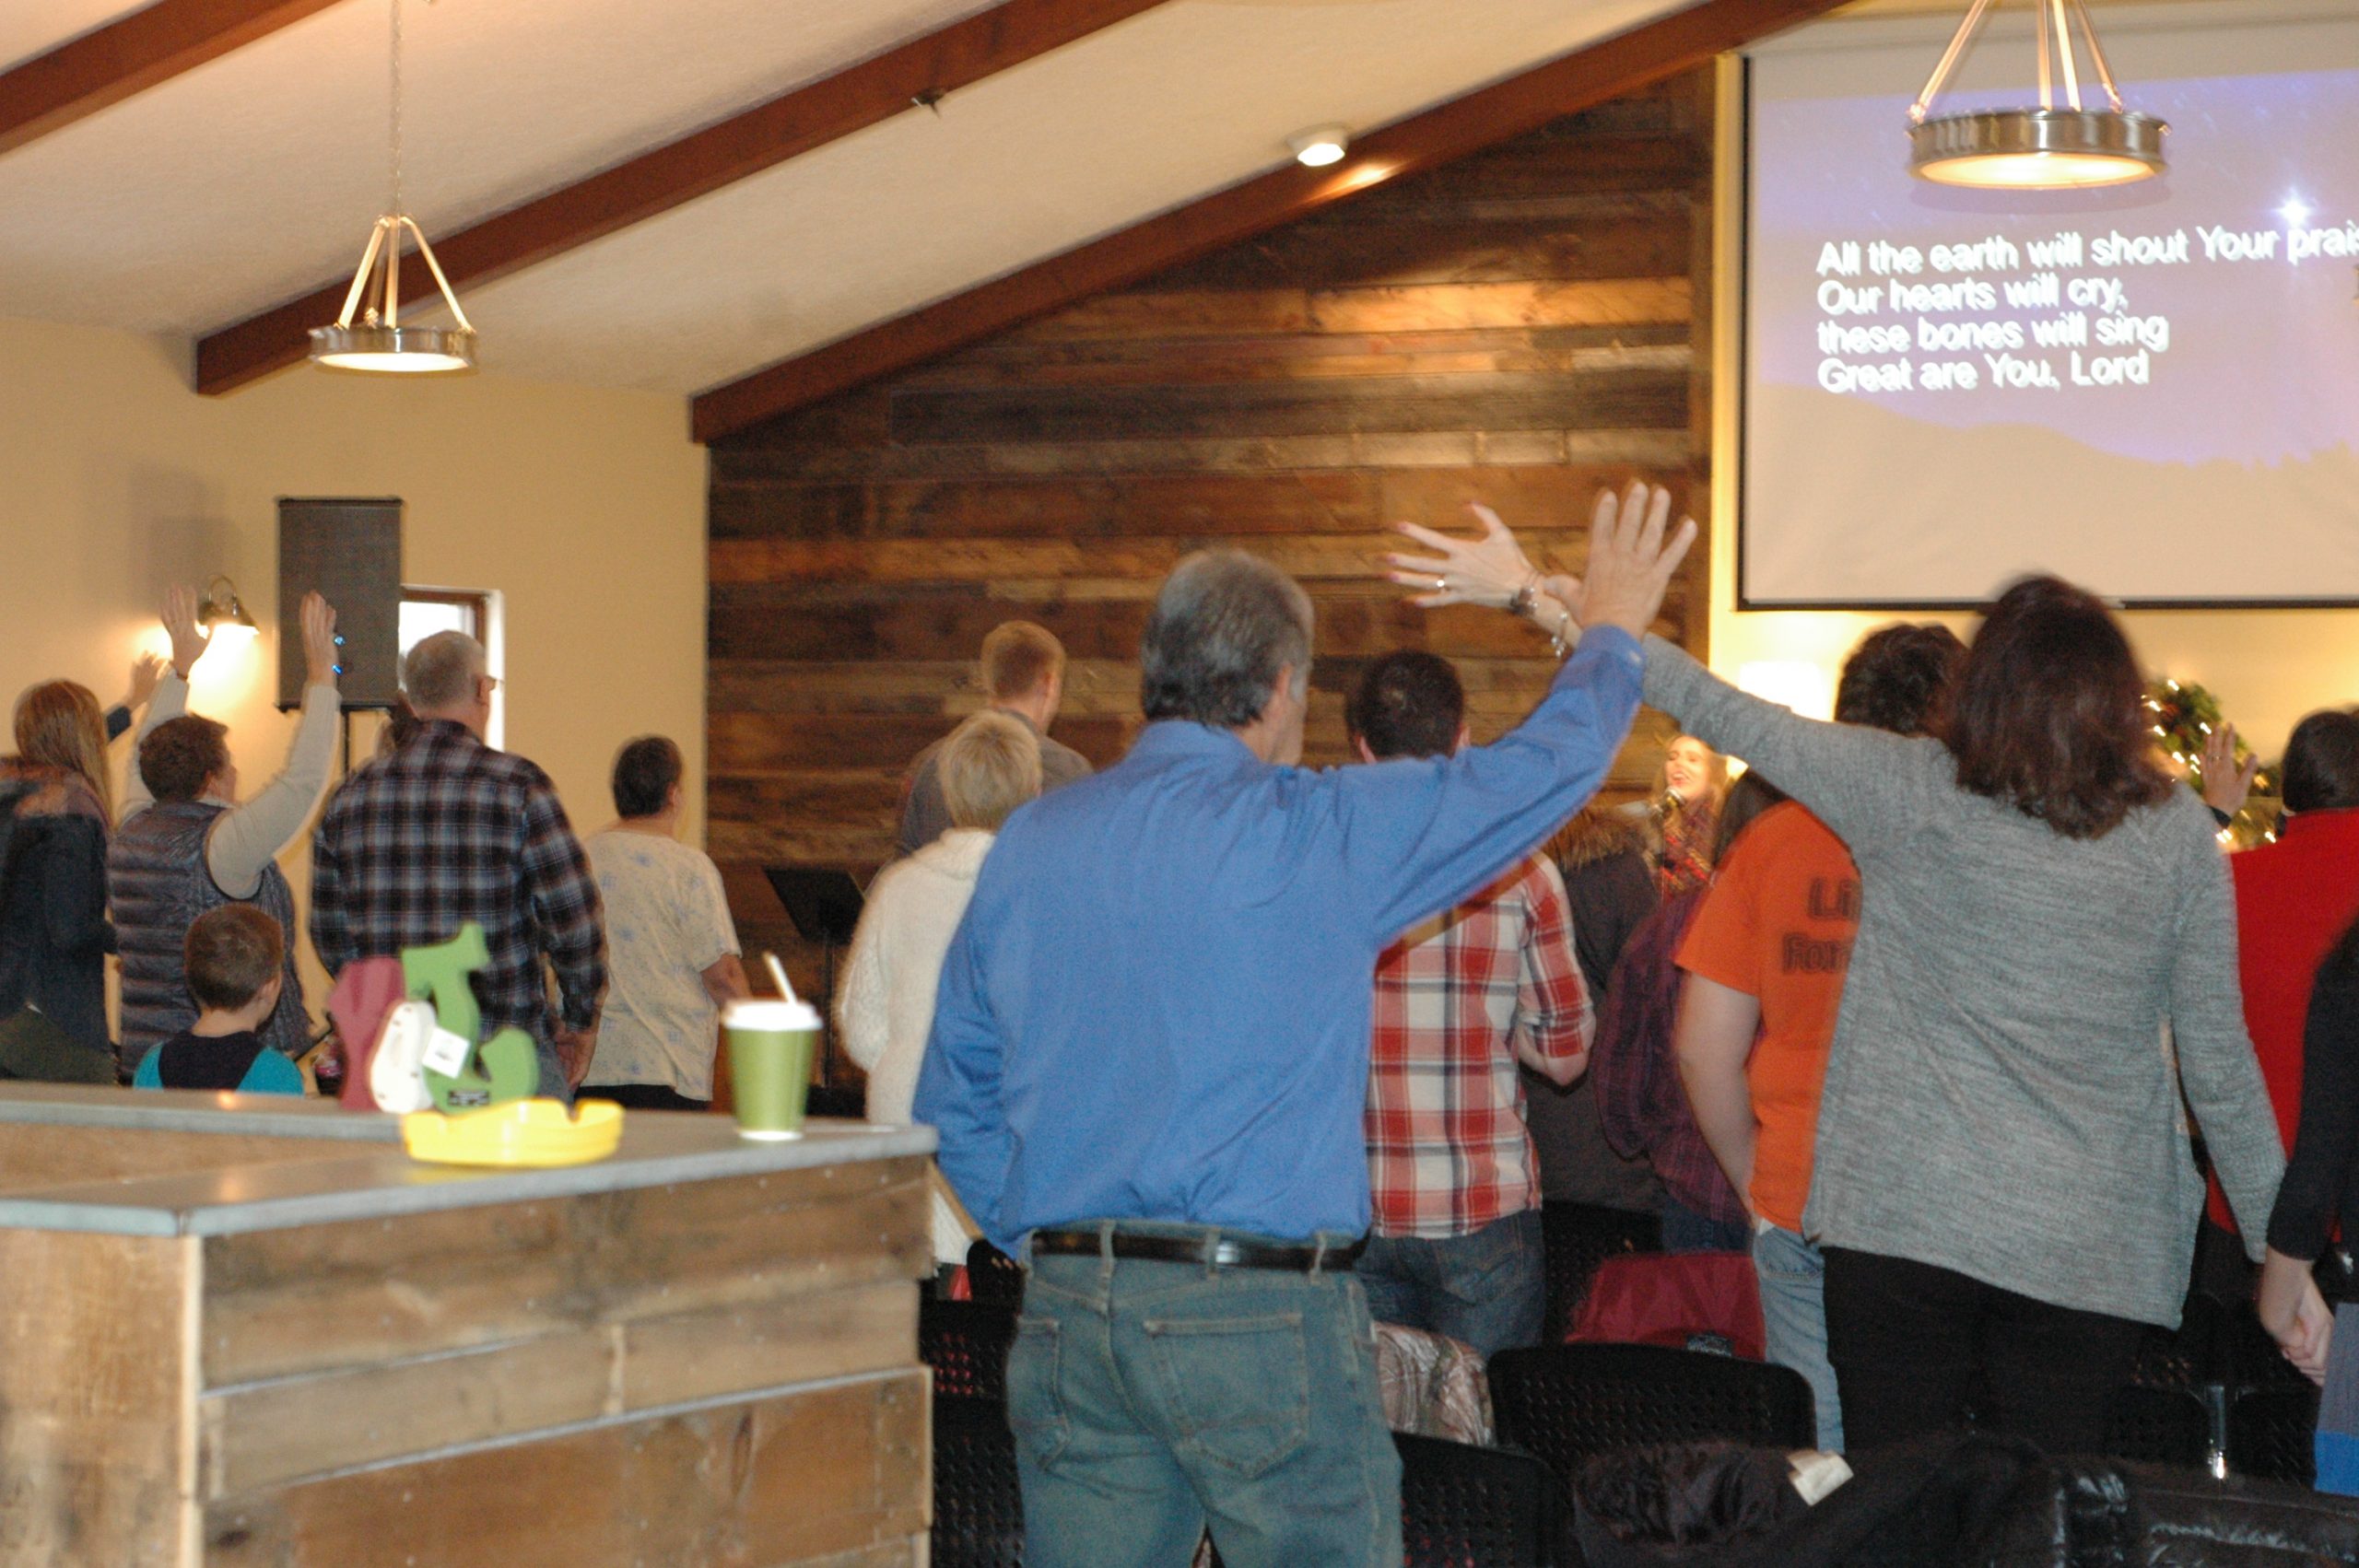 As pessoas se reúnem em uma pequena igreja para adoração, algumas com as mãos erguidas.